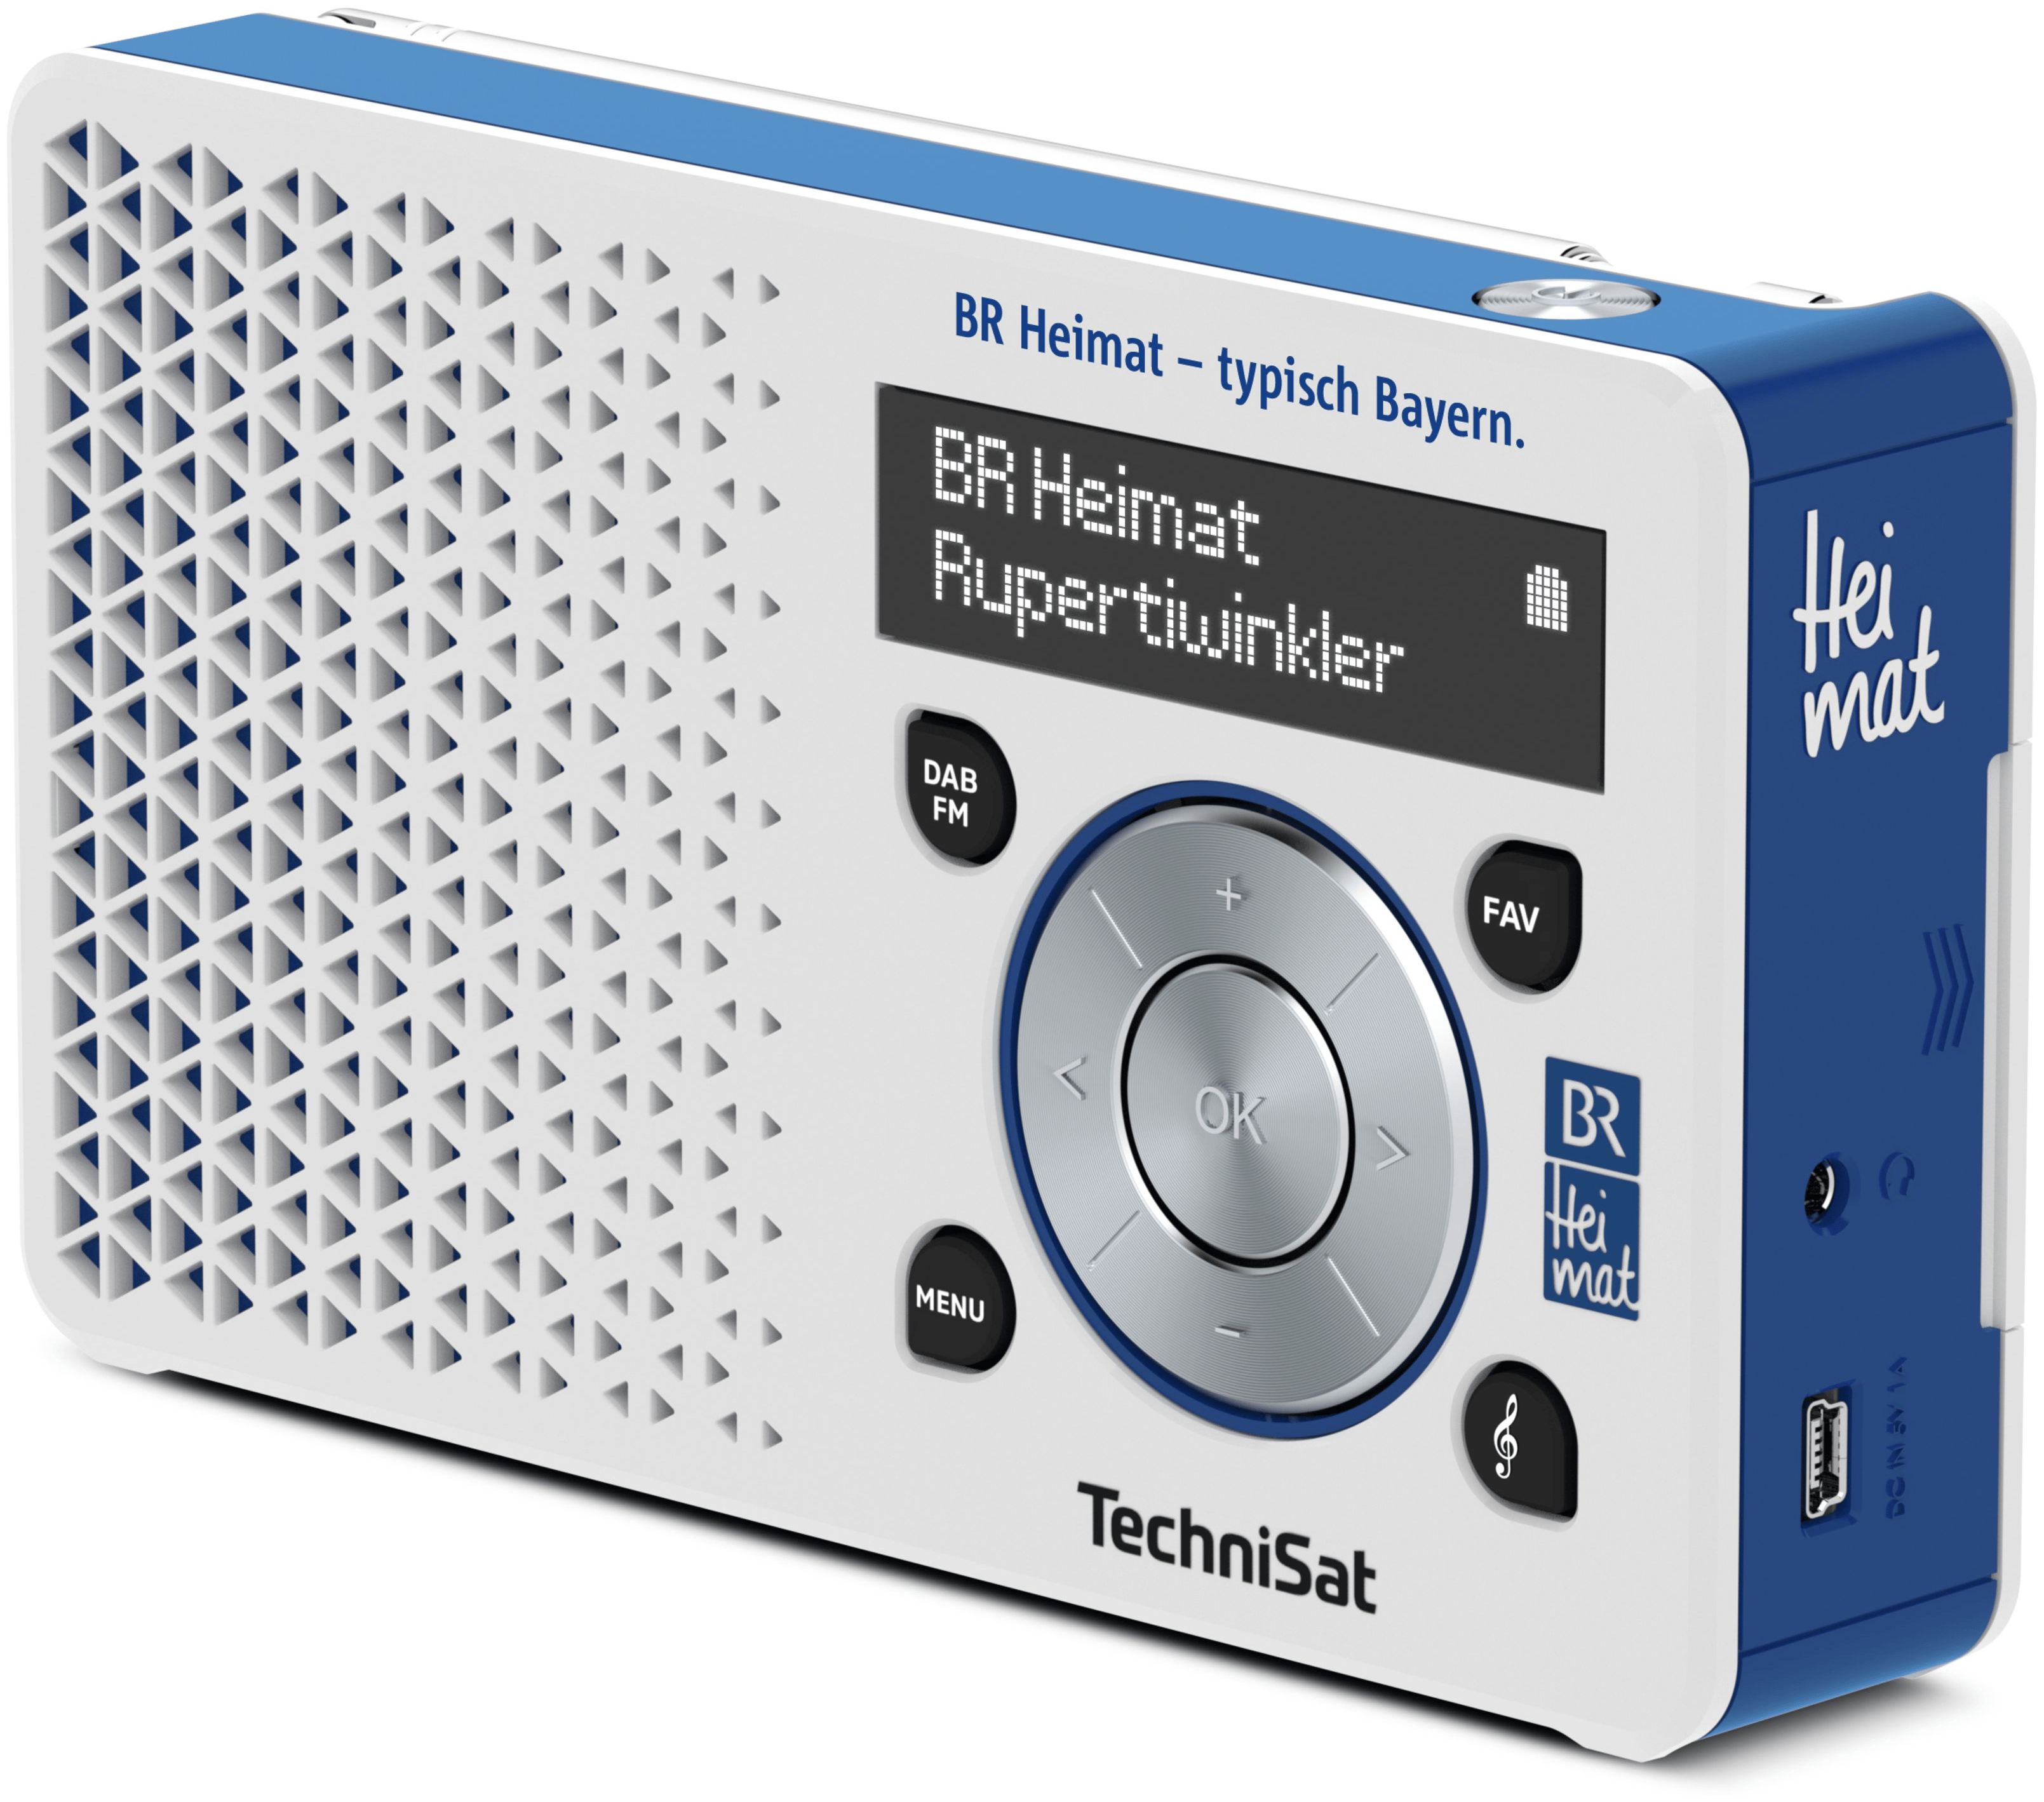 TechniSat DigitRadio1 BR Heimat expert DAB+, Radio Persönlich Edition von Silber) (Blau, FM Technomarkt